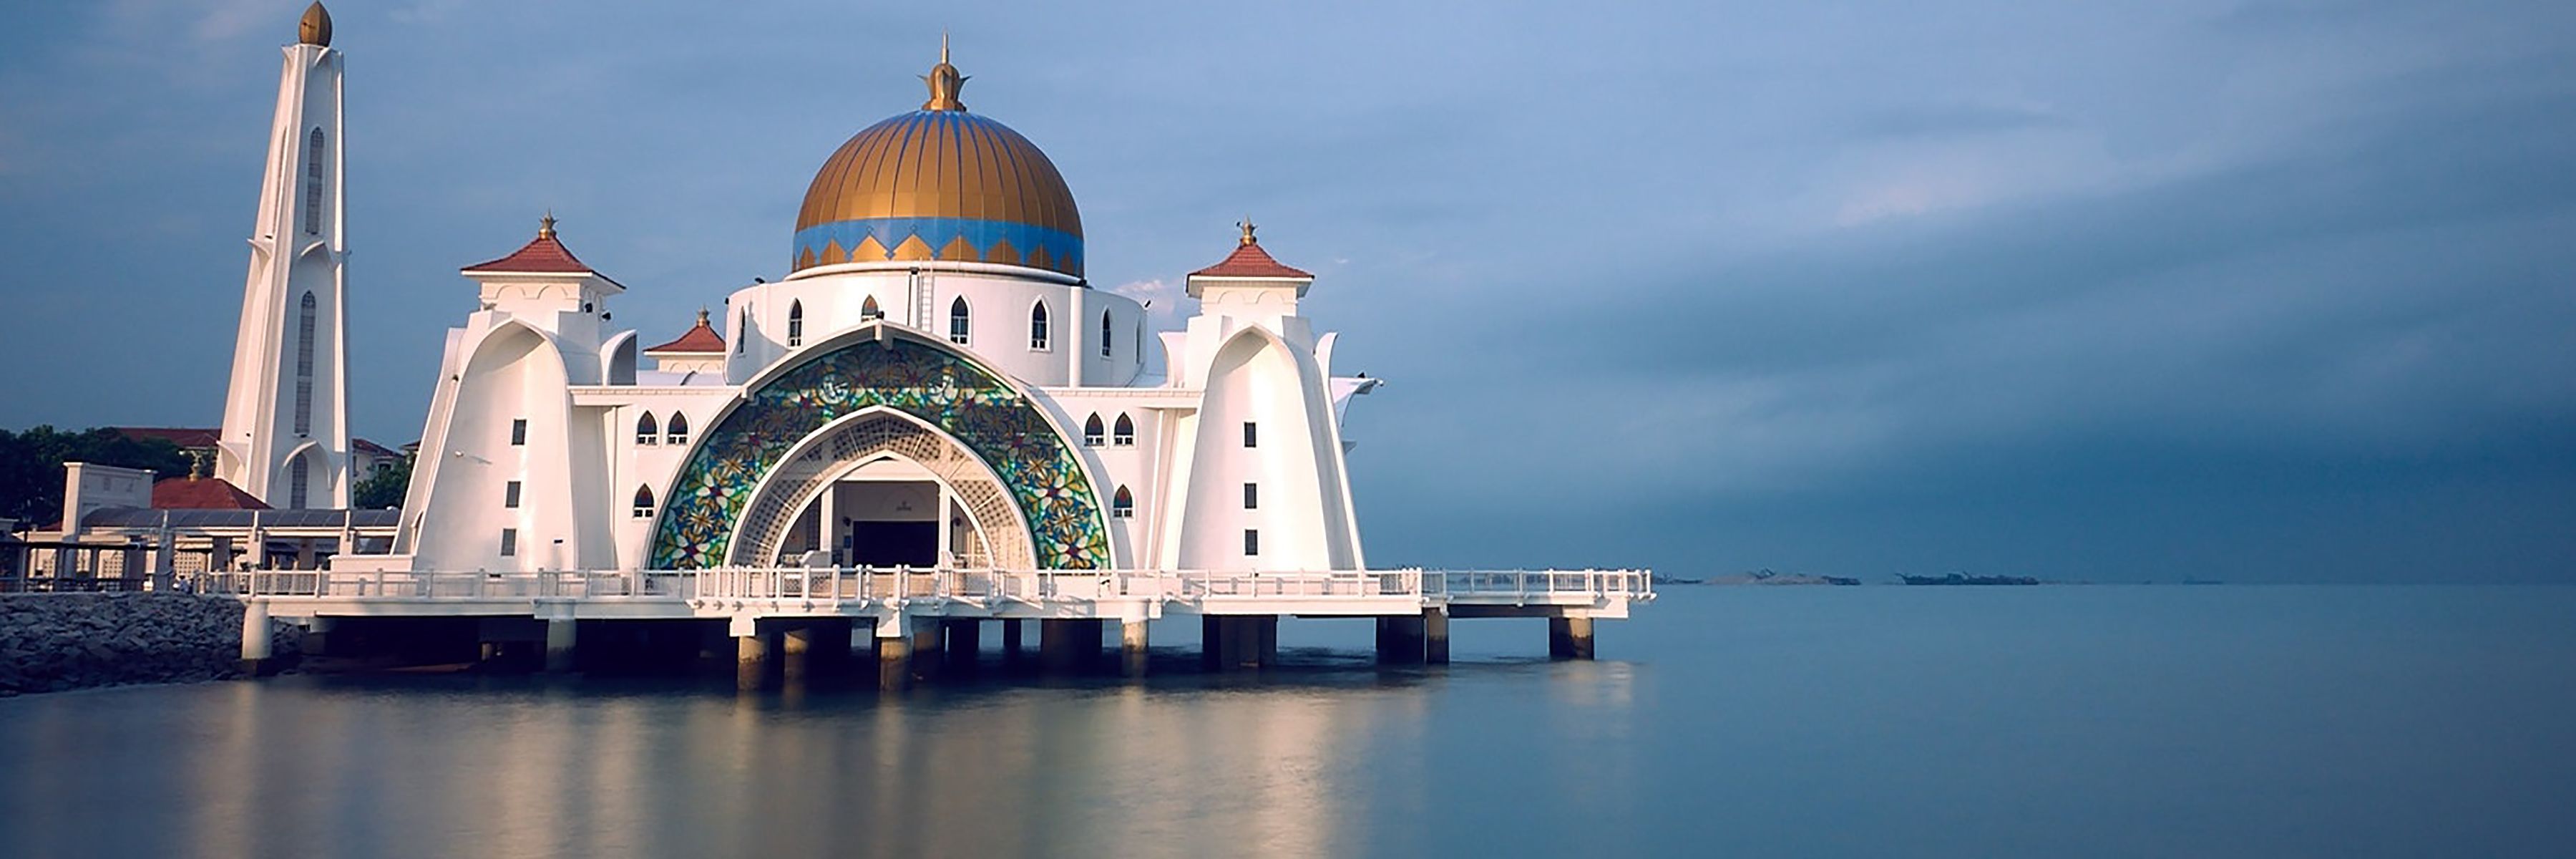 Reise zu den Höhepunkten Malaysias: Melaka Straits Moschee